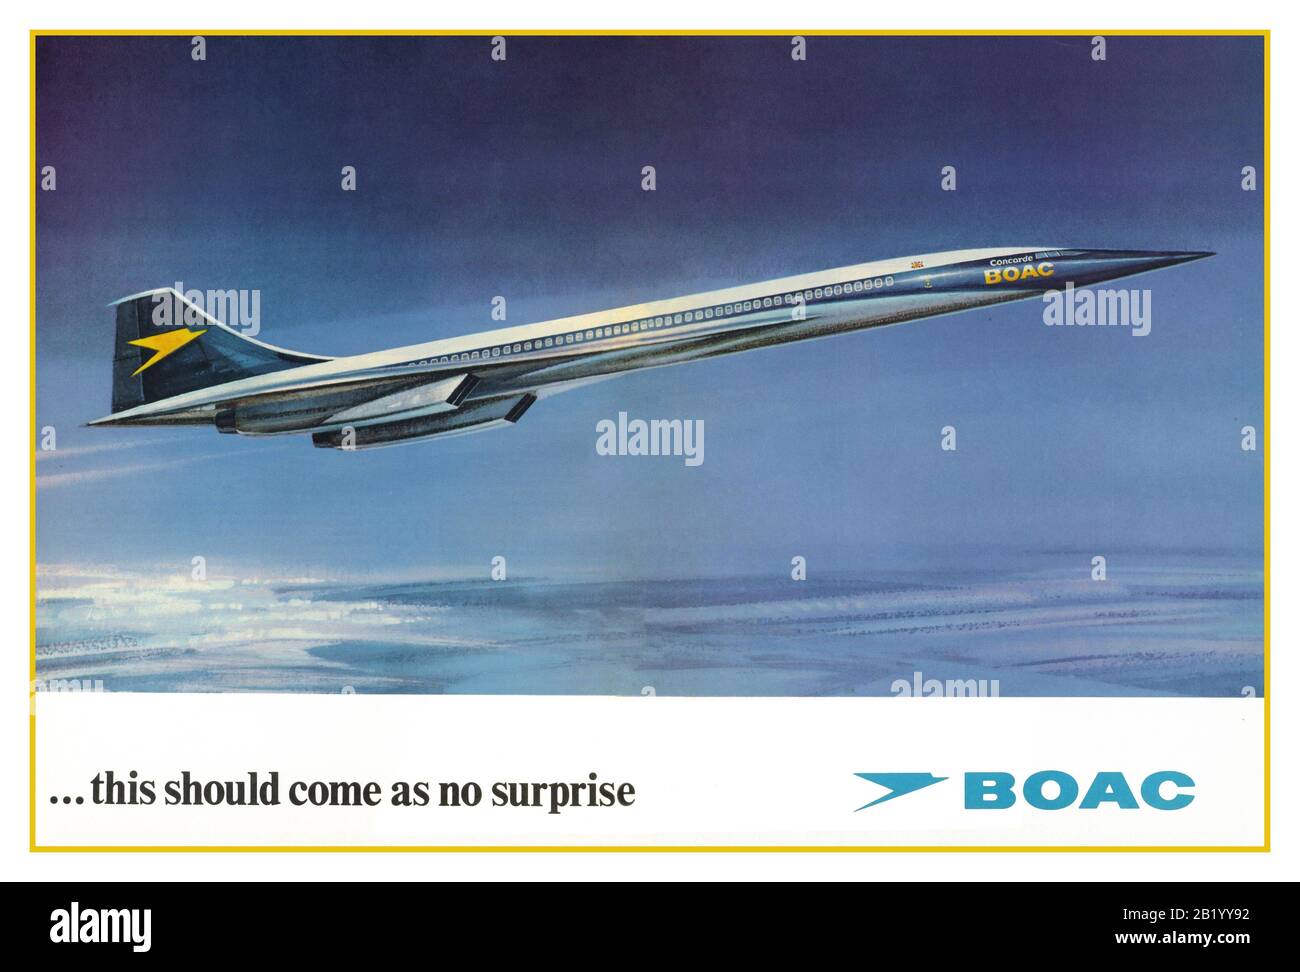 CONCORDE BOAC 1970er Jahre Werbung in historischer BOAC Lackierung DPS Werbeplakat BOAC fusionierte 1974 mit BEA und die erste britische Concorde flog 1975 unter der neuen British Airways Lackierung. „das sollte keine Überraschung sein“ Stockfoto